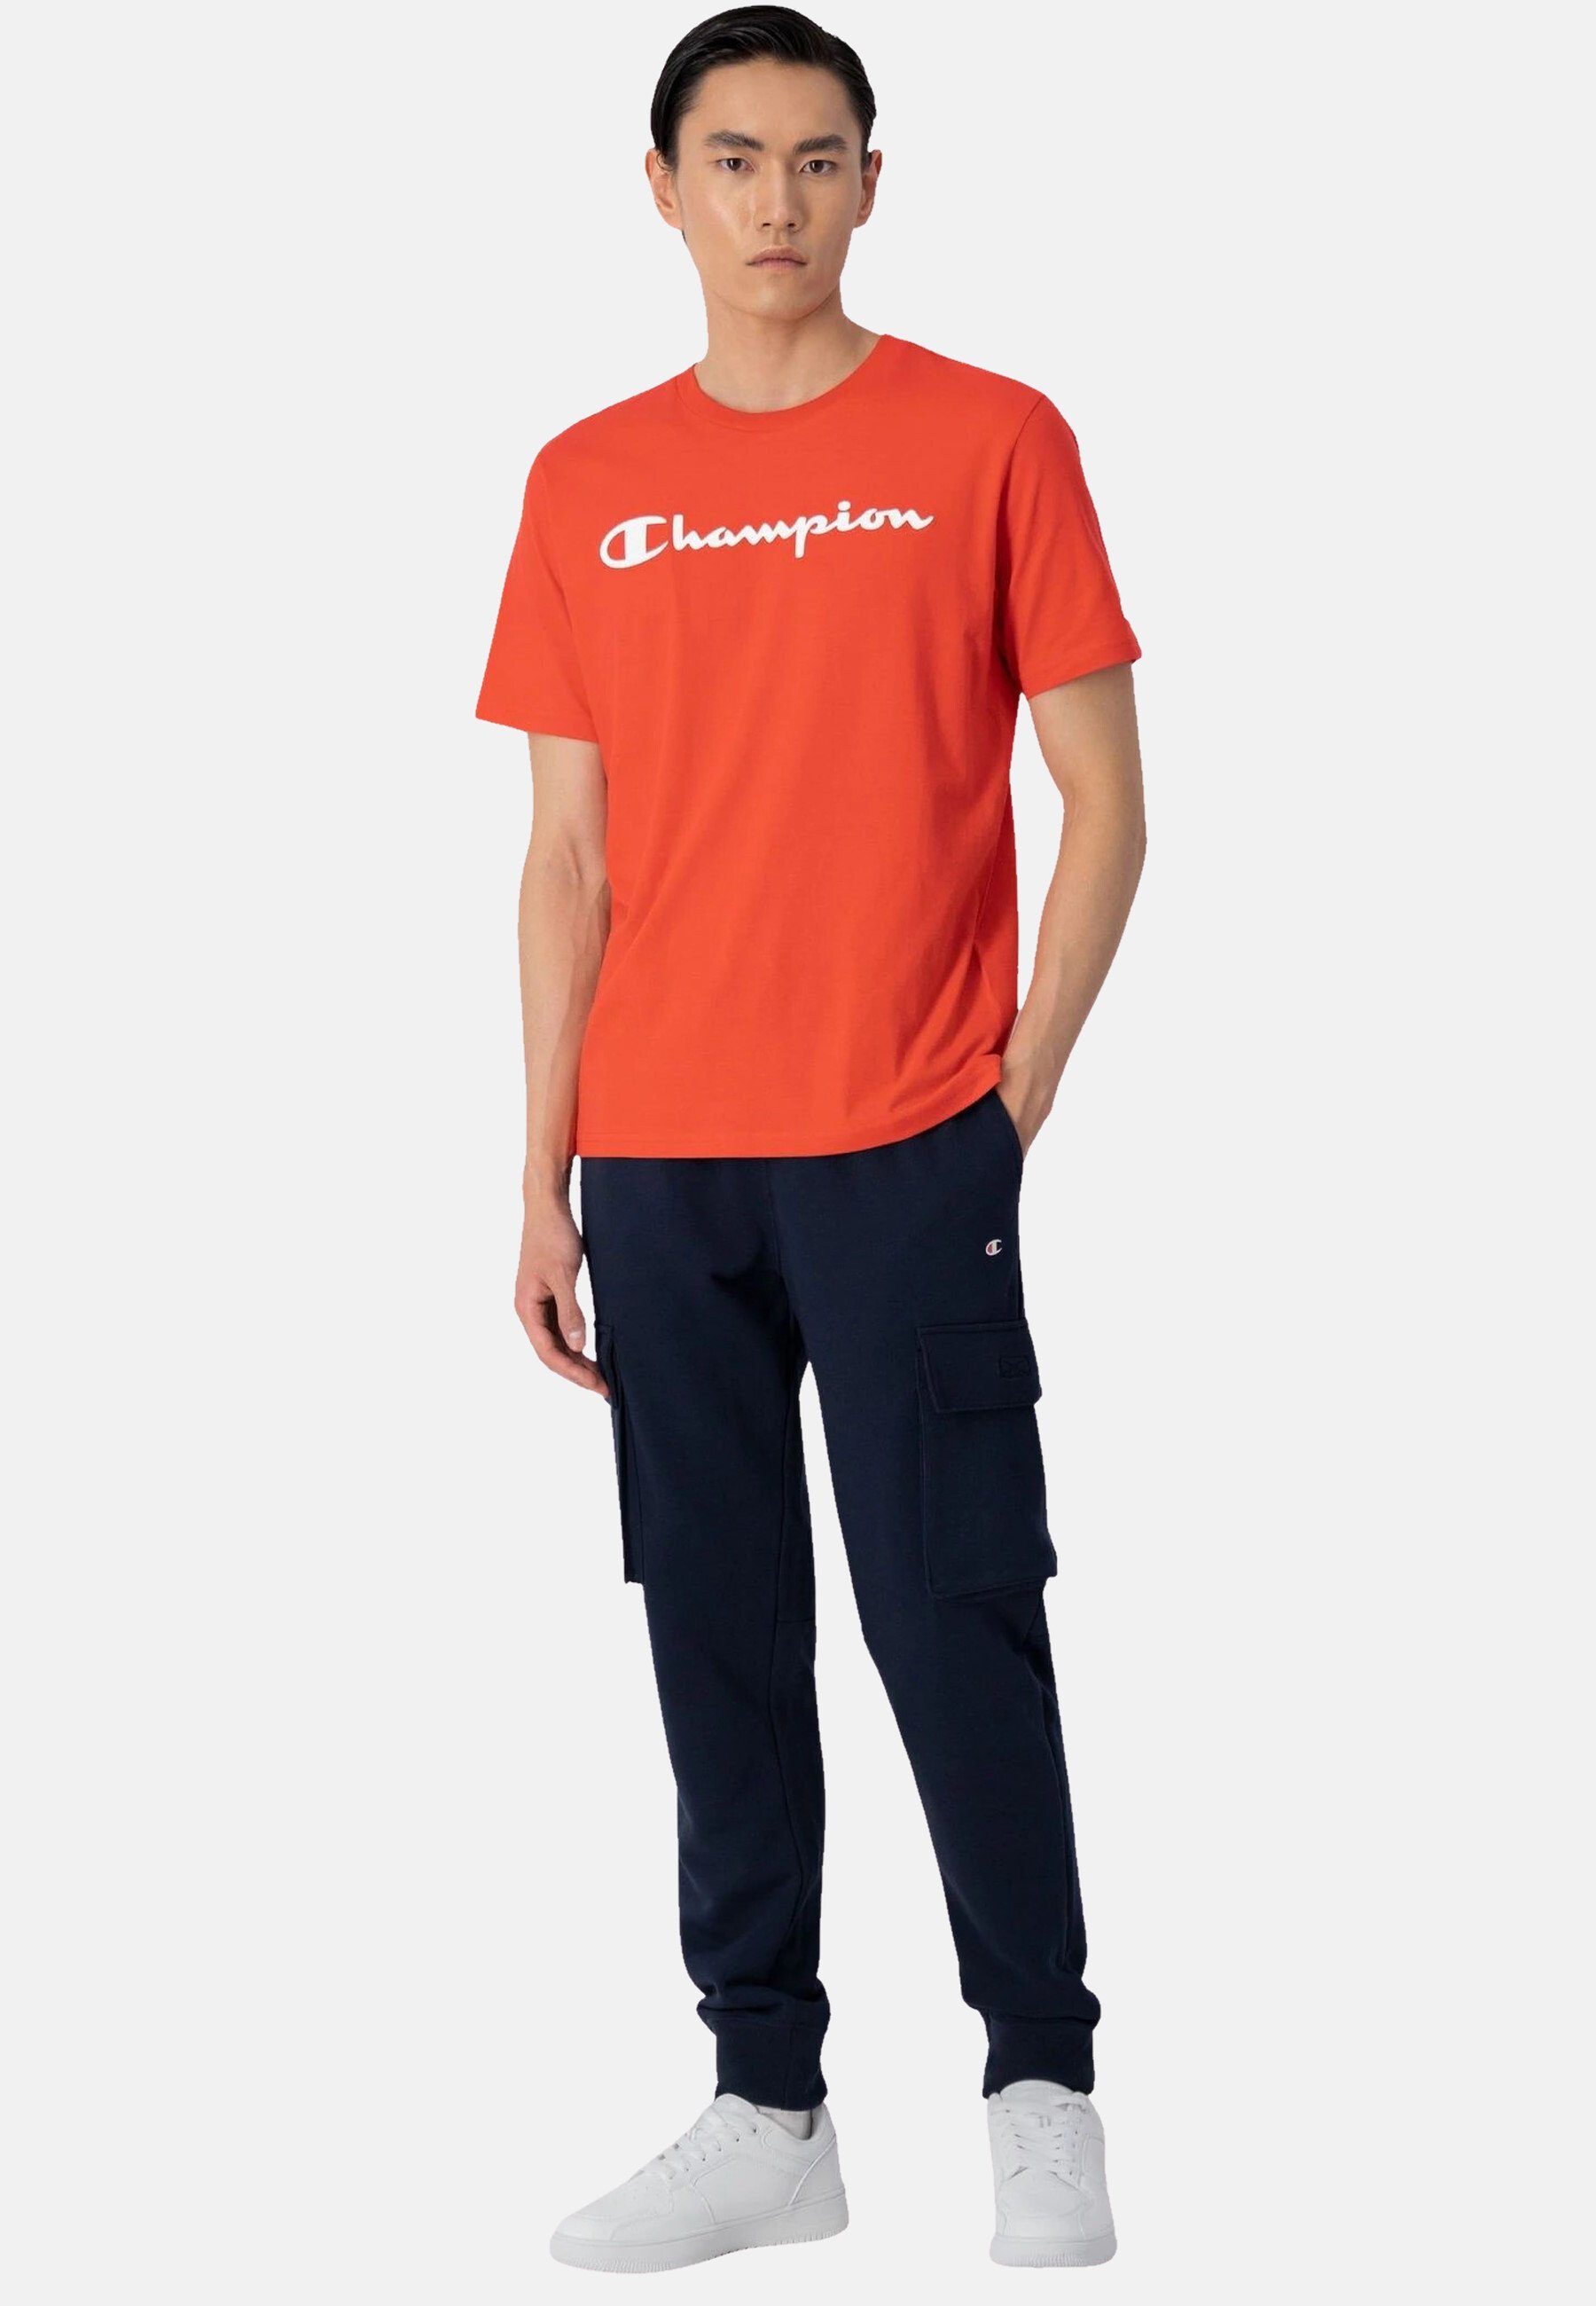 Champion T-Shirt Shirt rot Rundhals-T-Shirt aus Baumwolle mit